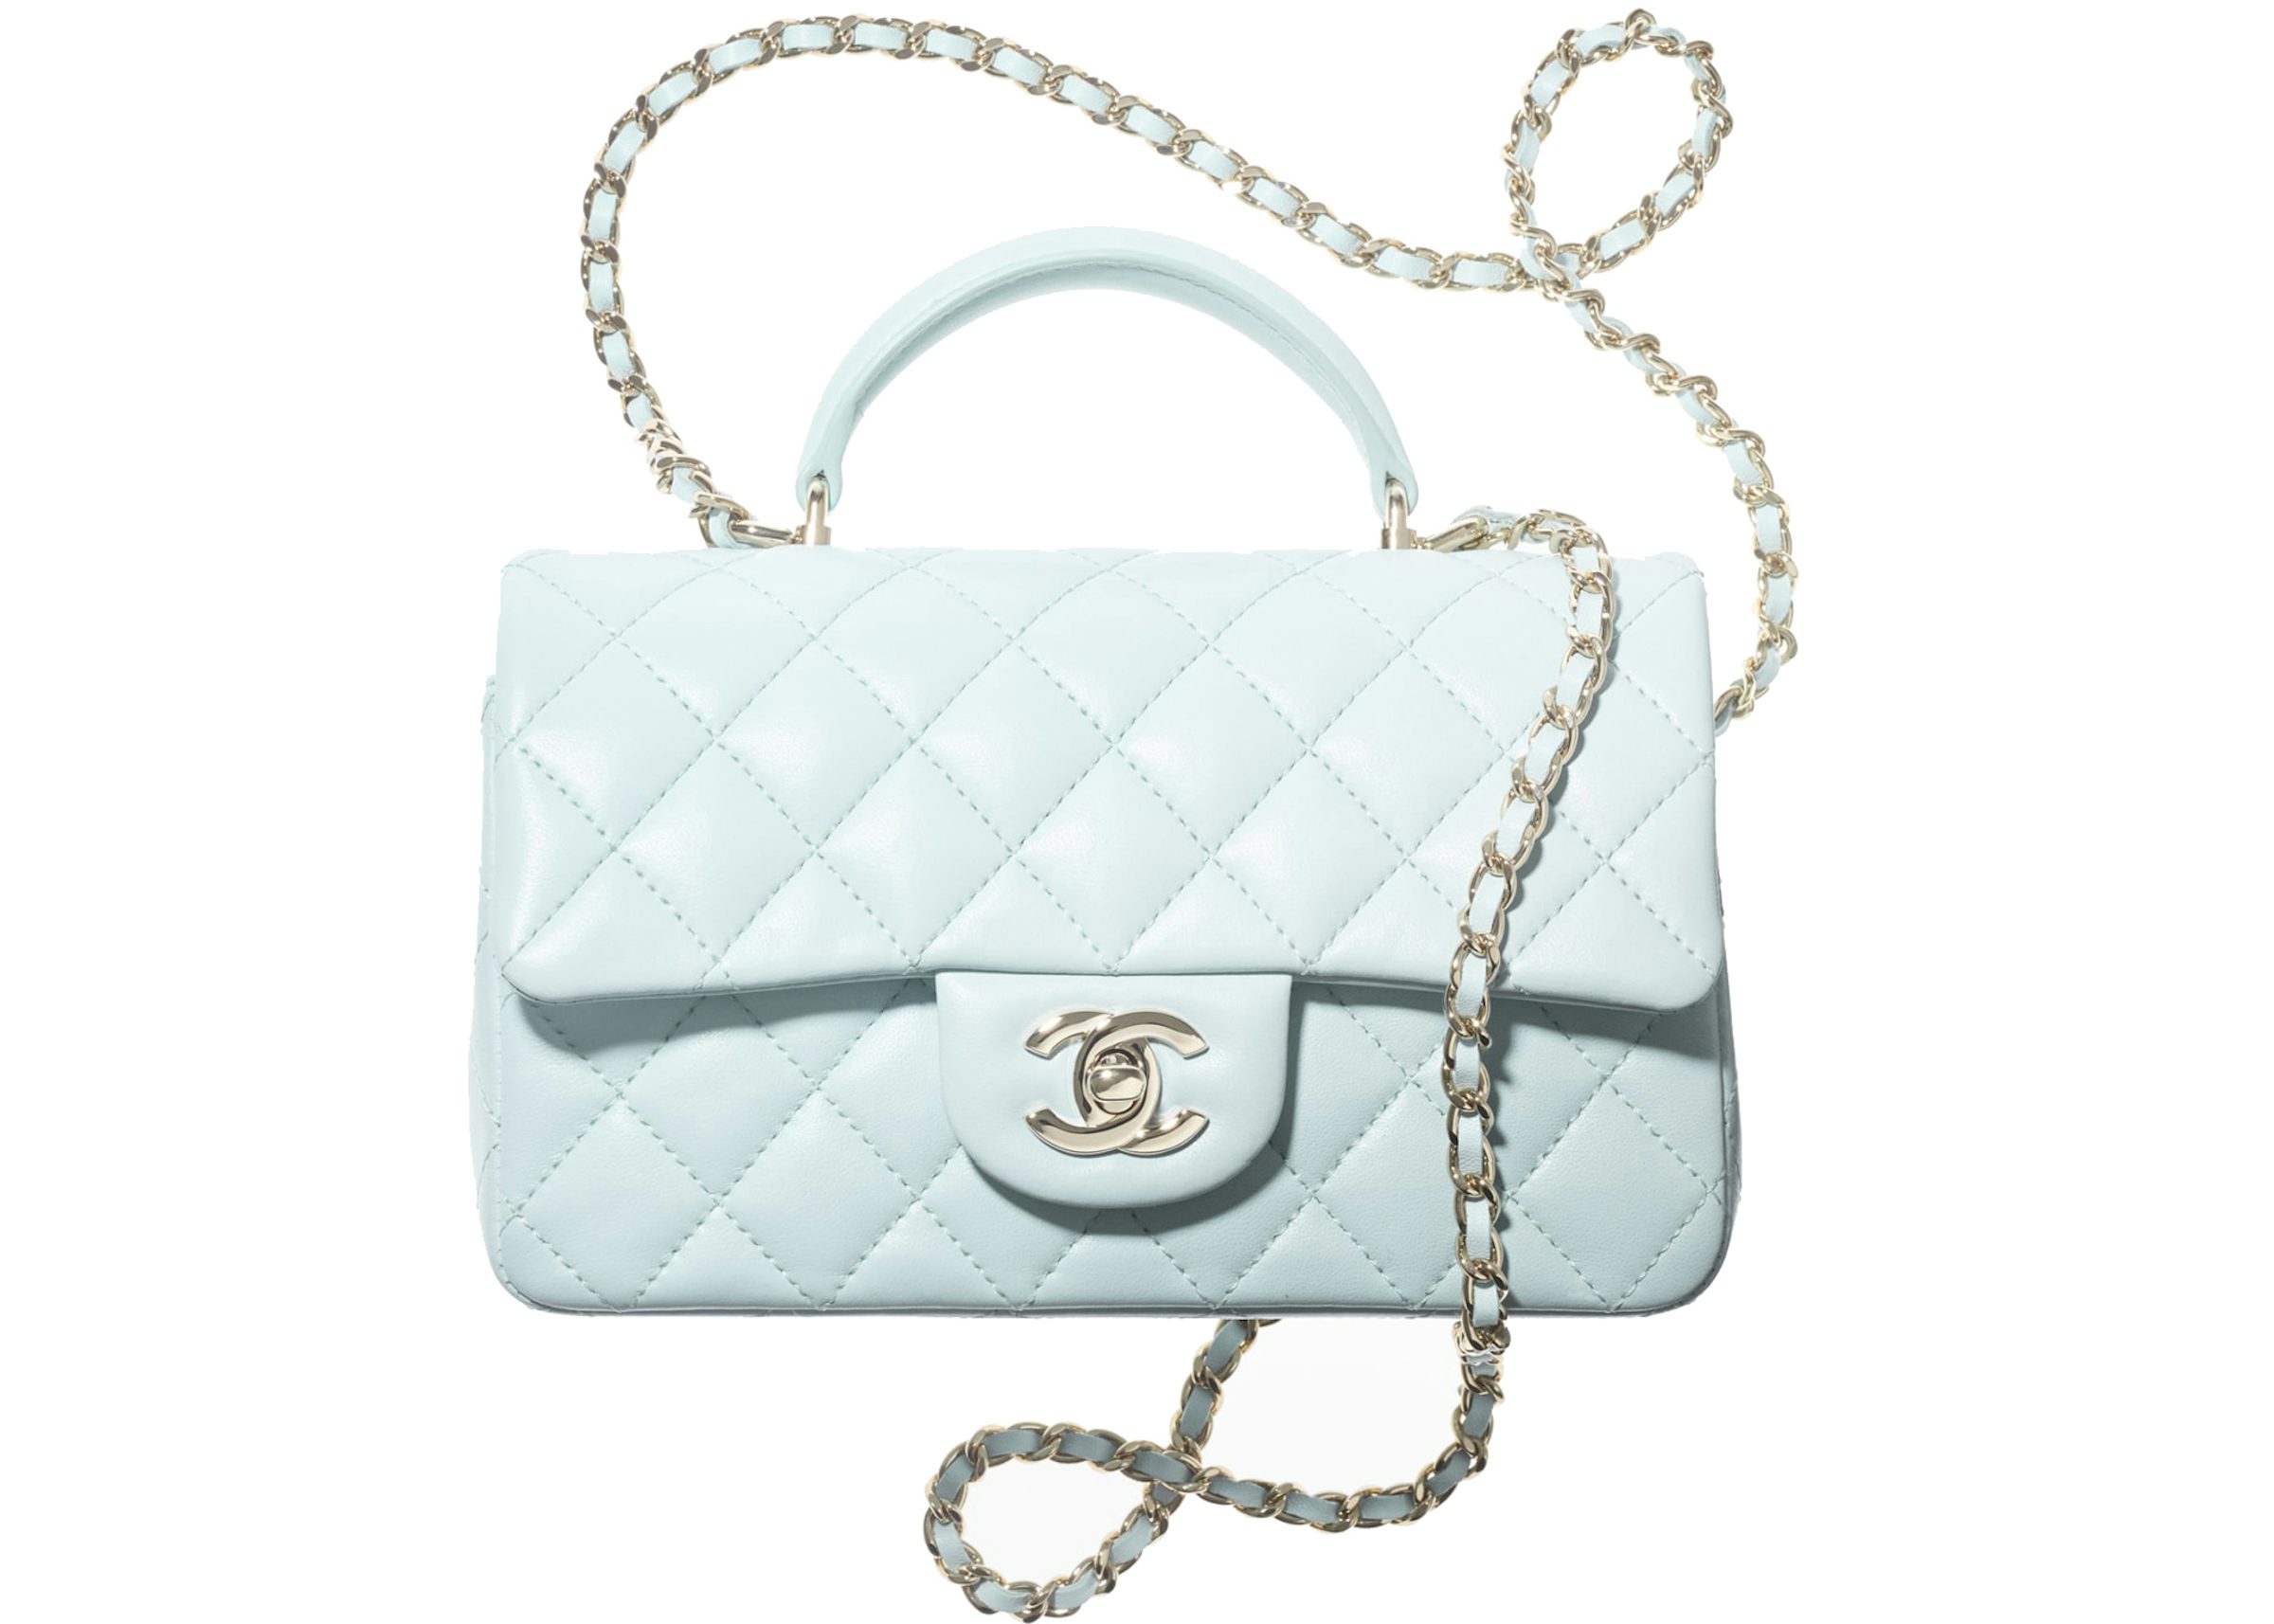 Chanel Handbag Pink Top Handle Tote Bag Antique Gold Hardware